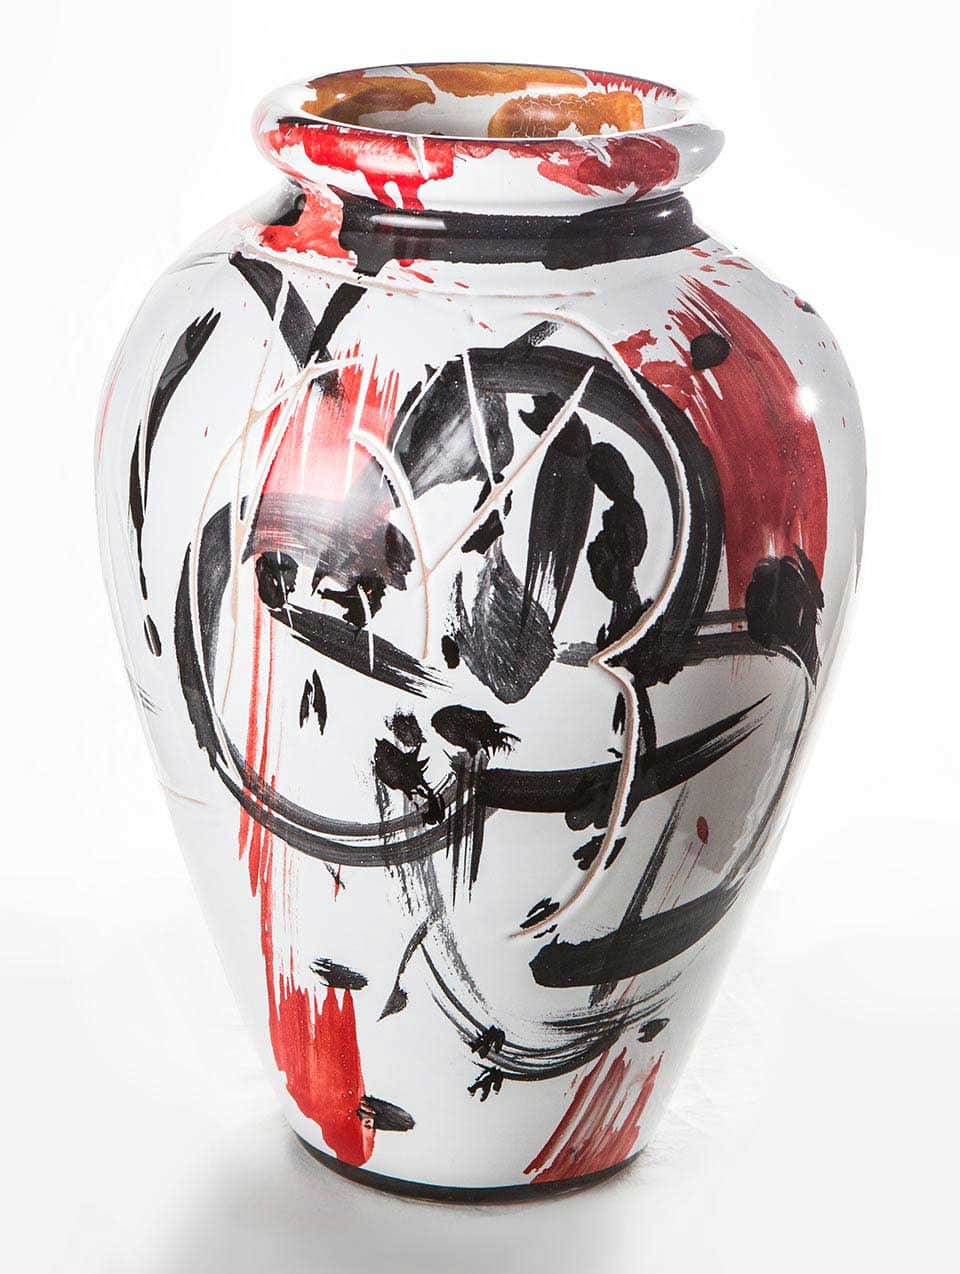 Vaso dipinto e graffito realizzato presso Ceramiche Pierluca. 2015.